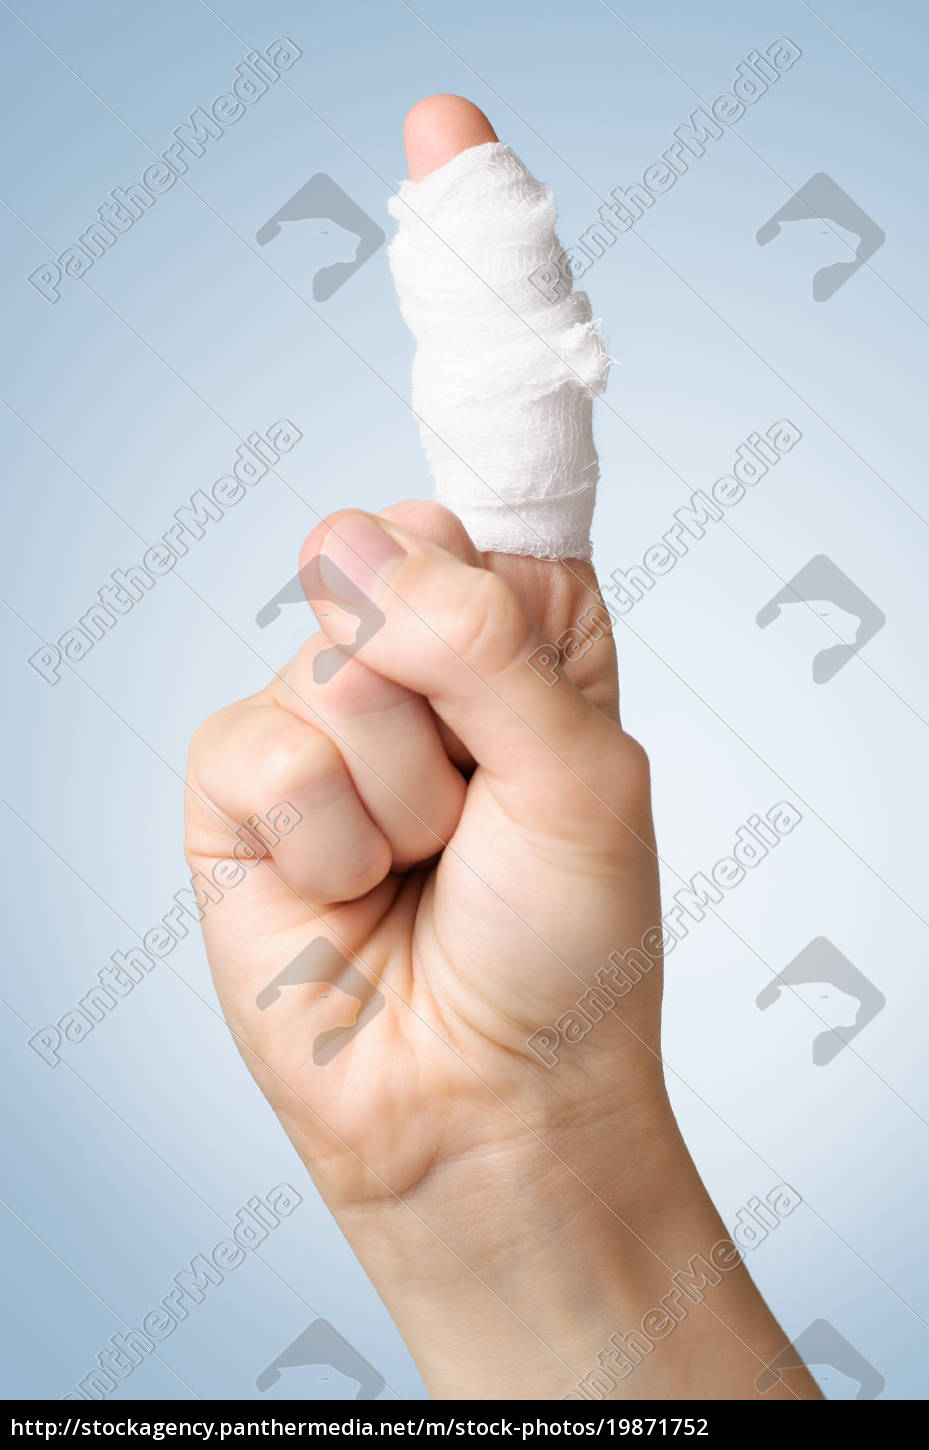 verletzter finger mit verband - Lizenzfreies Bild #19871752